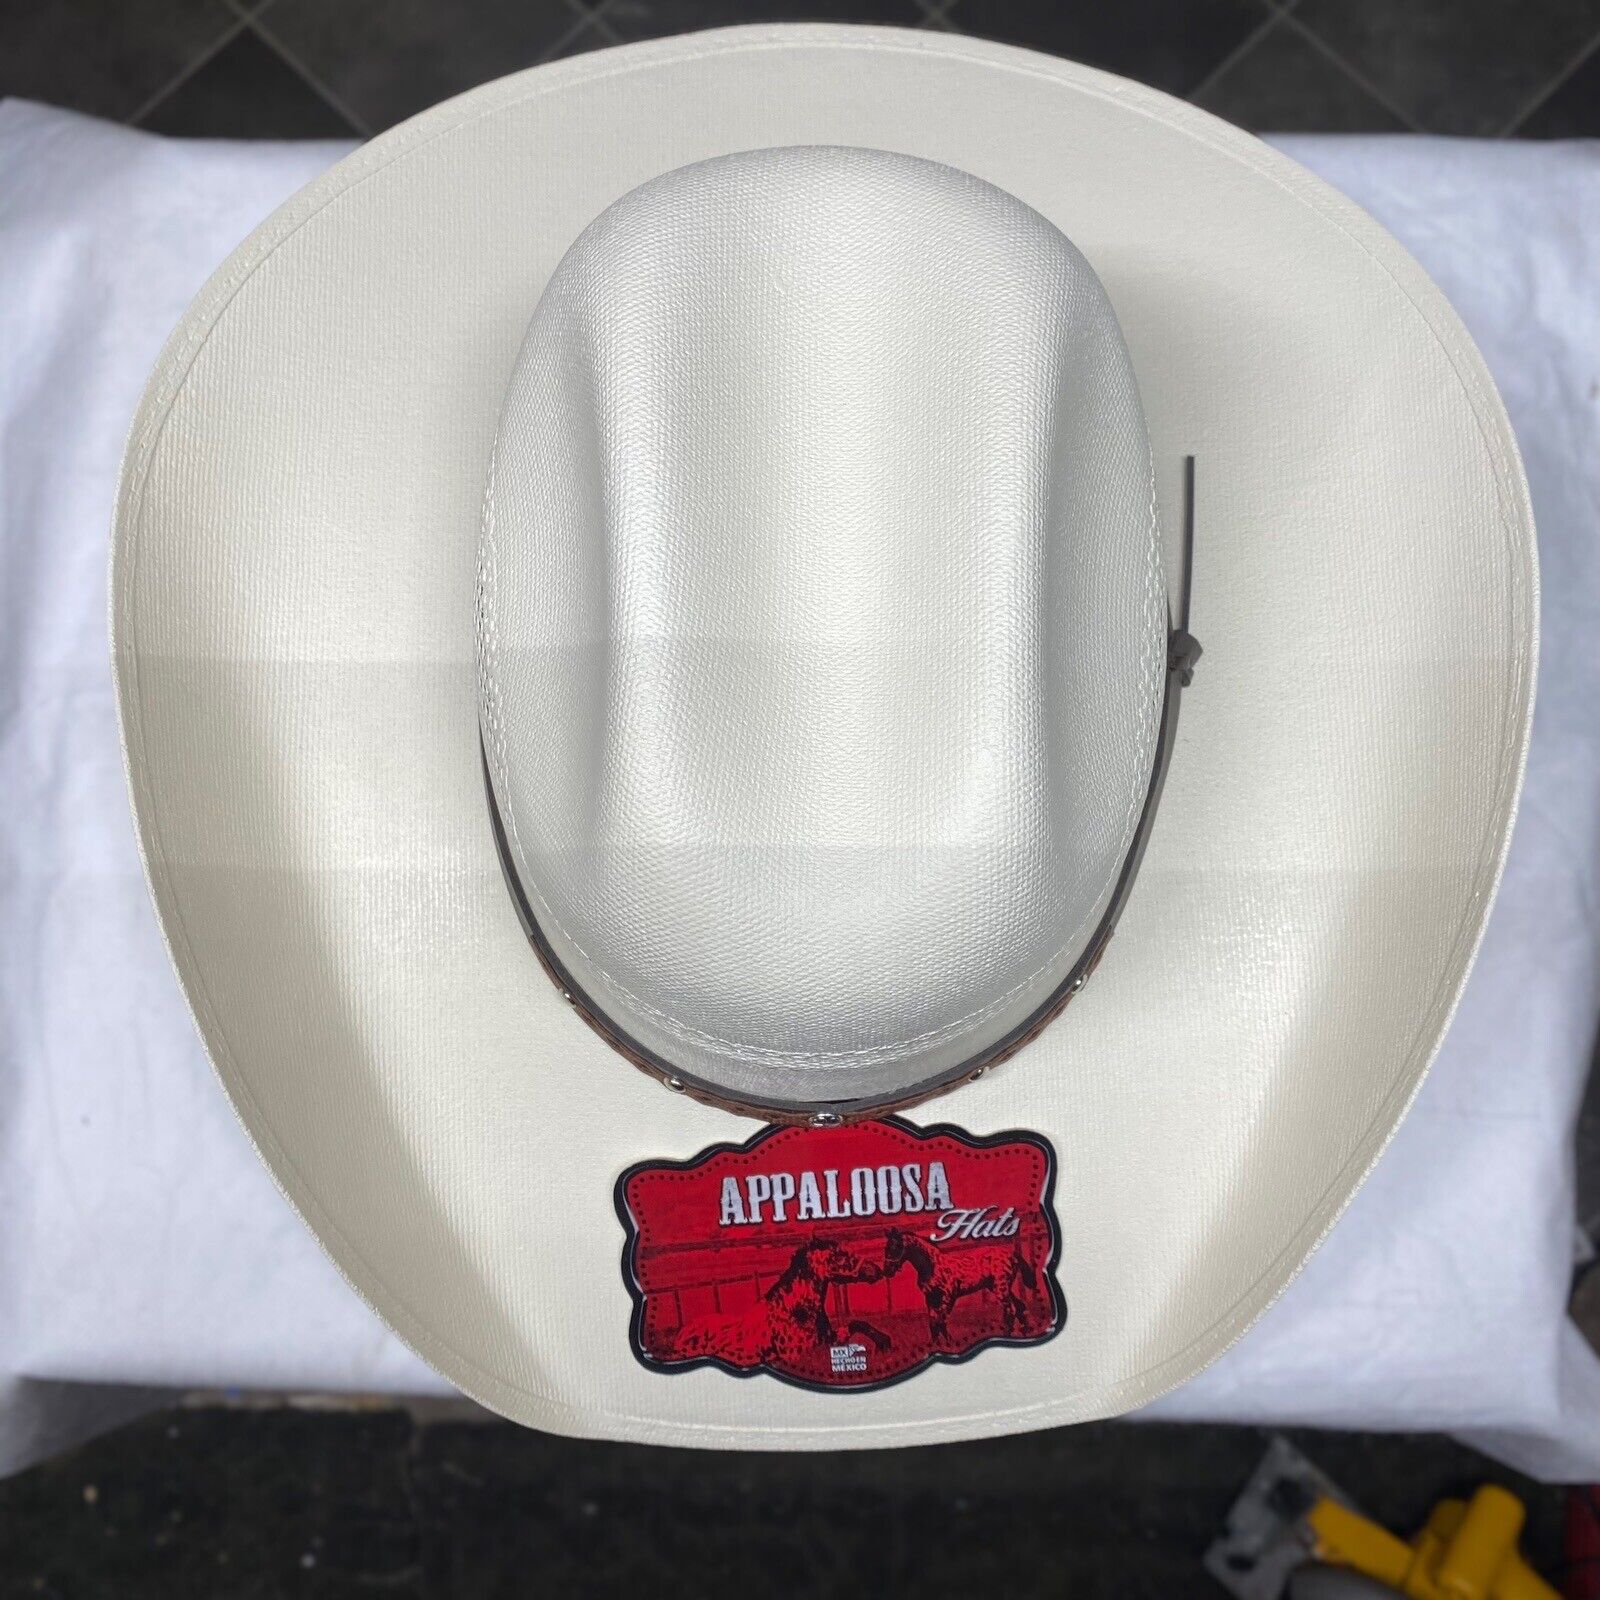 Men’s White Western Cowboy Hat. Sombrero Vaquero De Hombre Blanco.